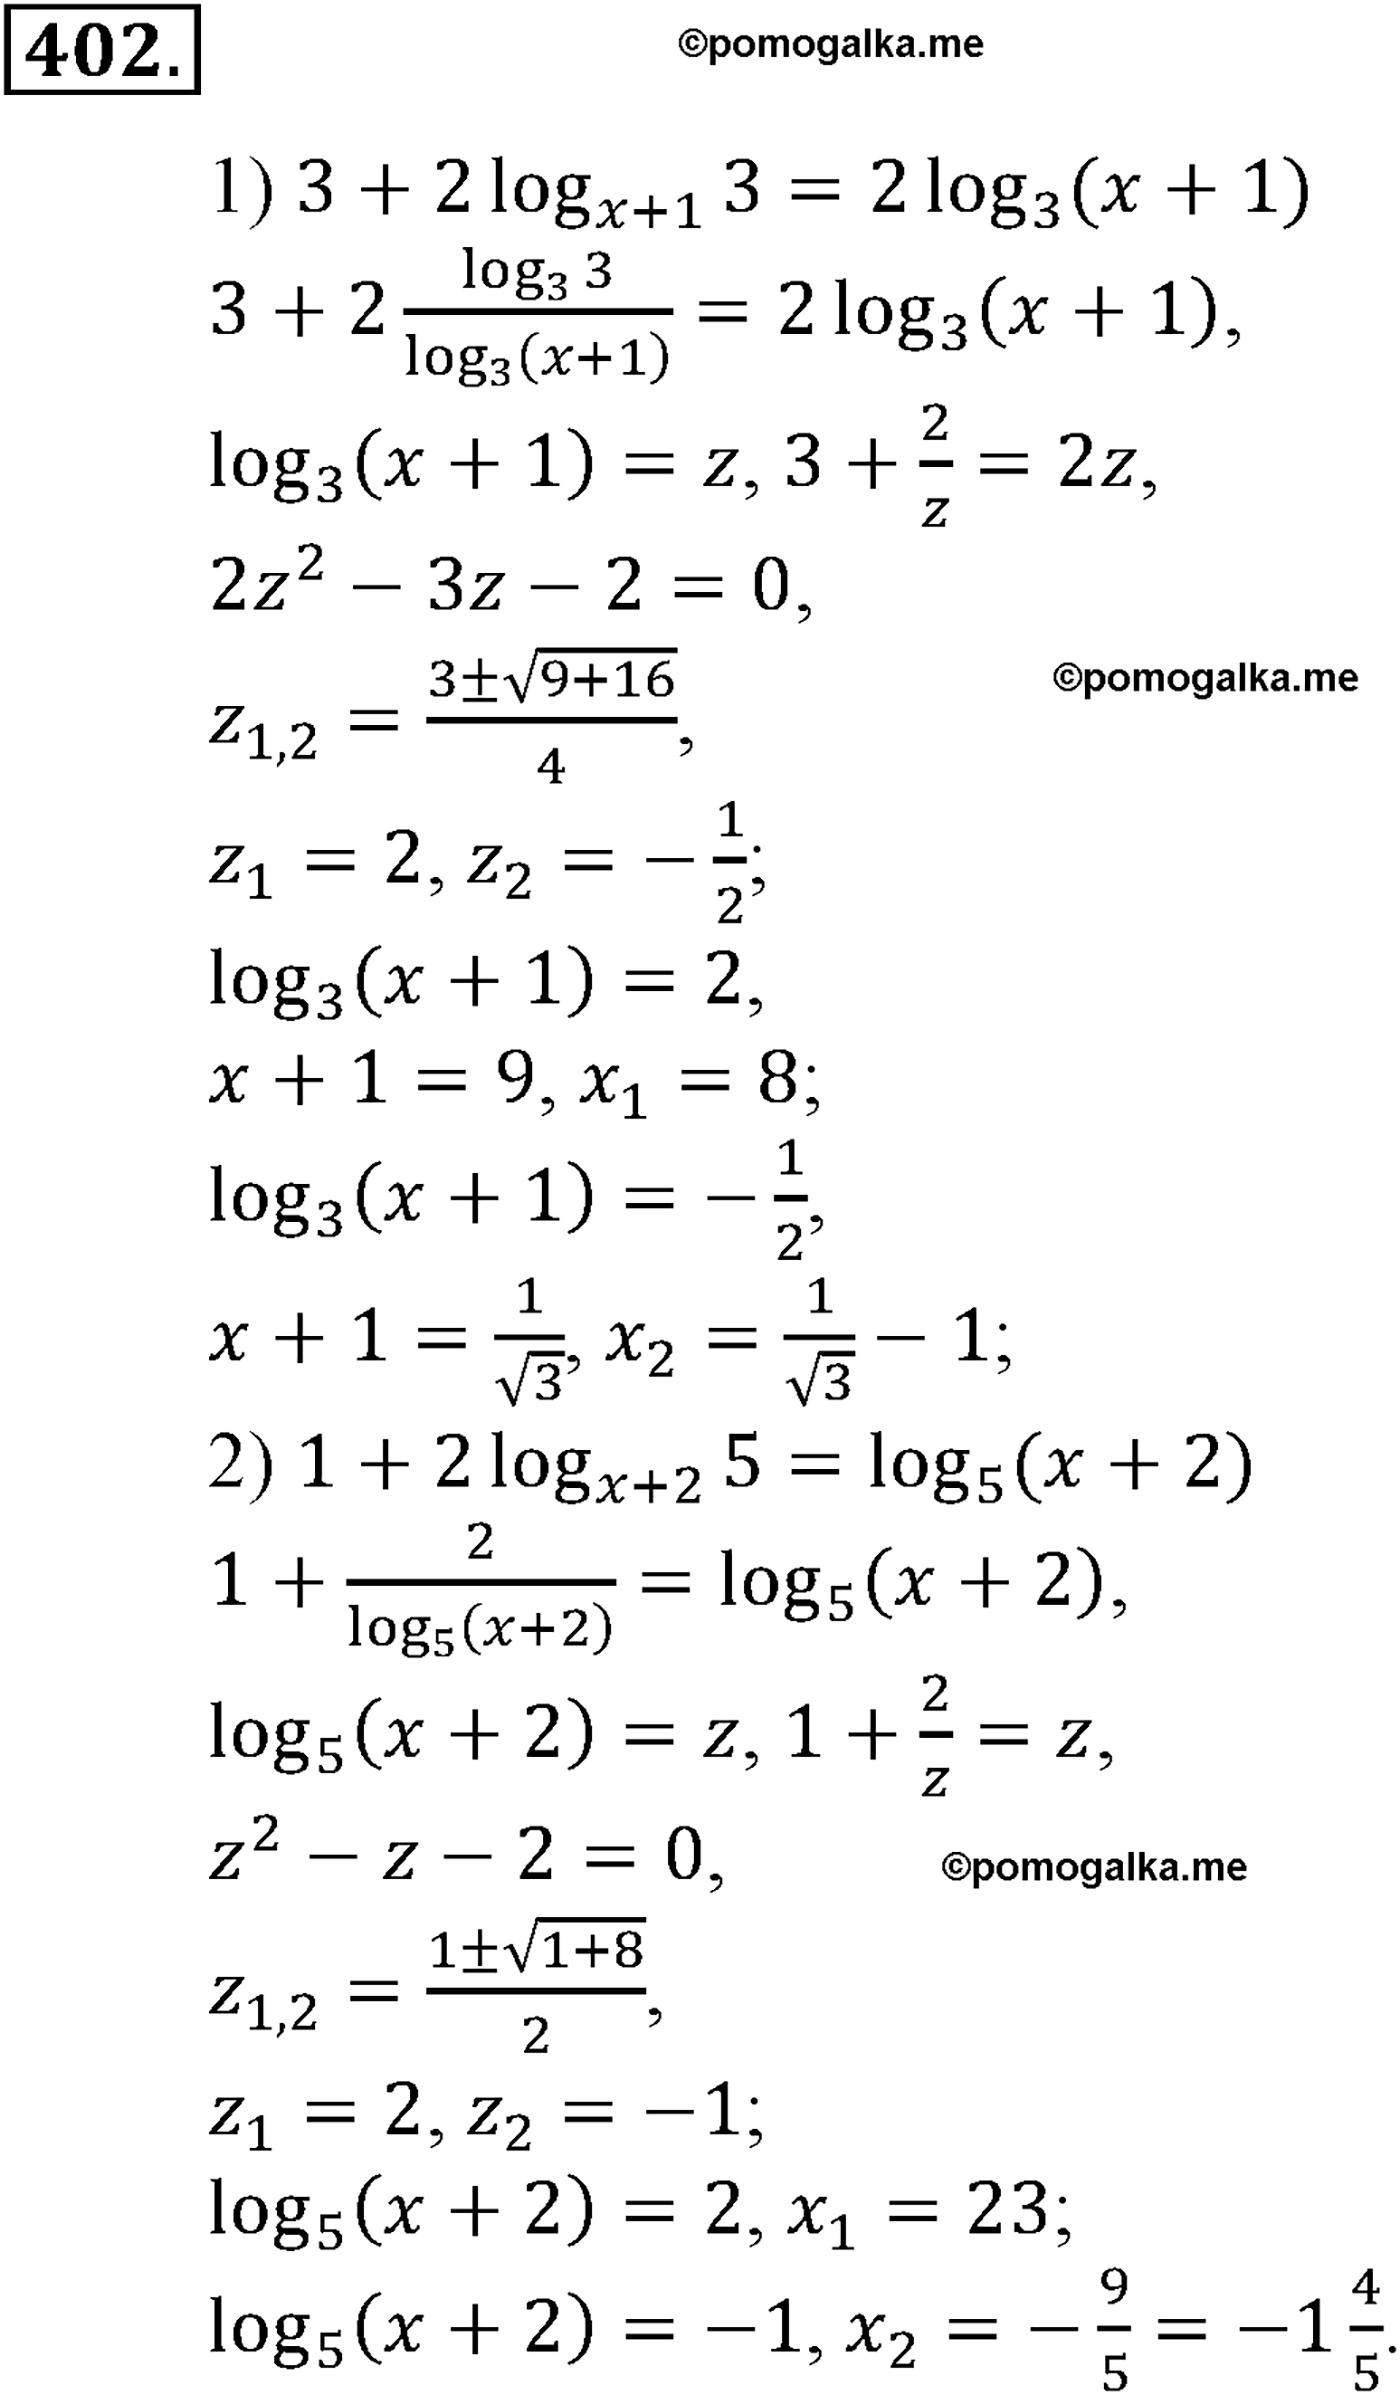 разбор задачи №402 по алгебре за 10-11 класс из учебника Алимова, Колягина